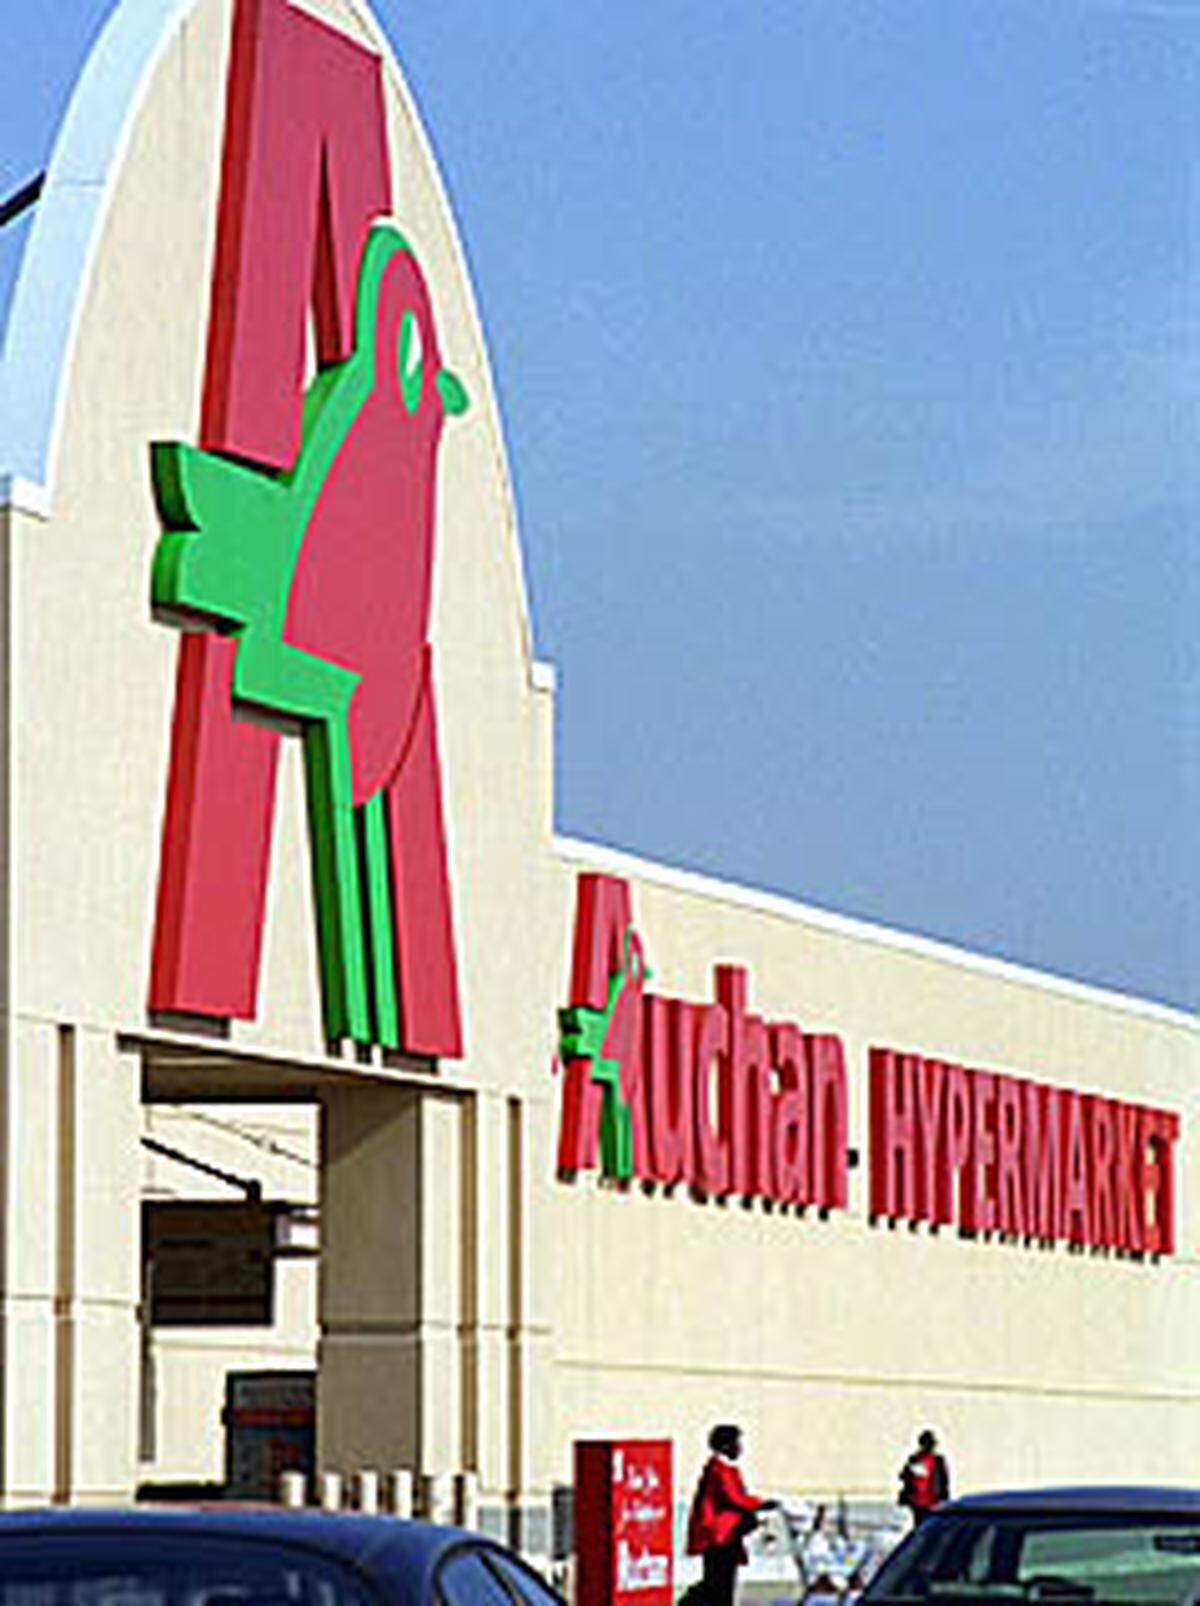 Auchan mit Sitz in Lille, Frankreich, betreibt Supermärkte in unterschiedlichen Größen. Umsatz 2008: 39,484 Mrd. Euro